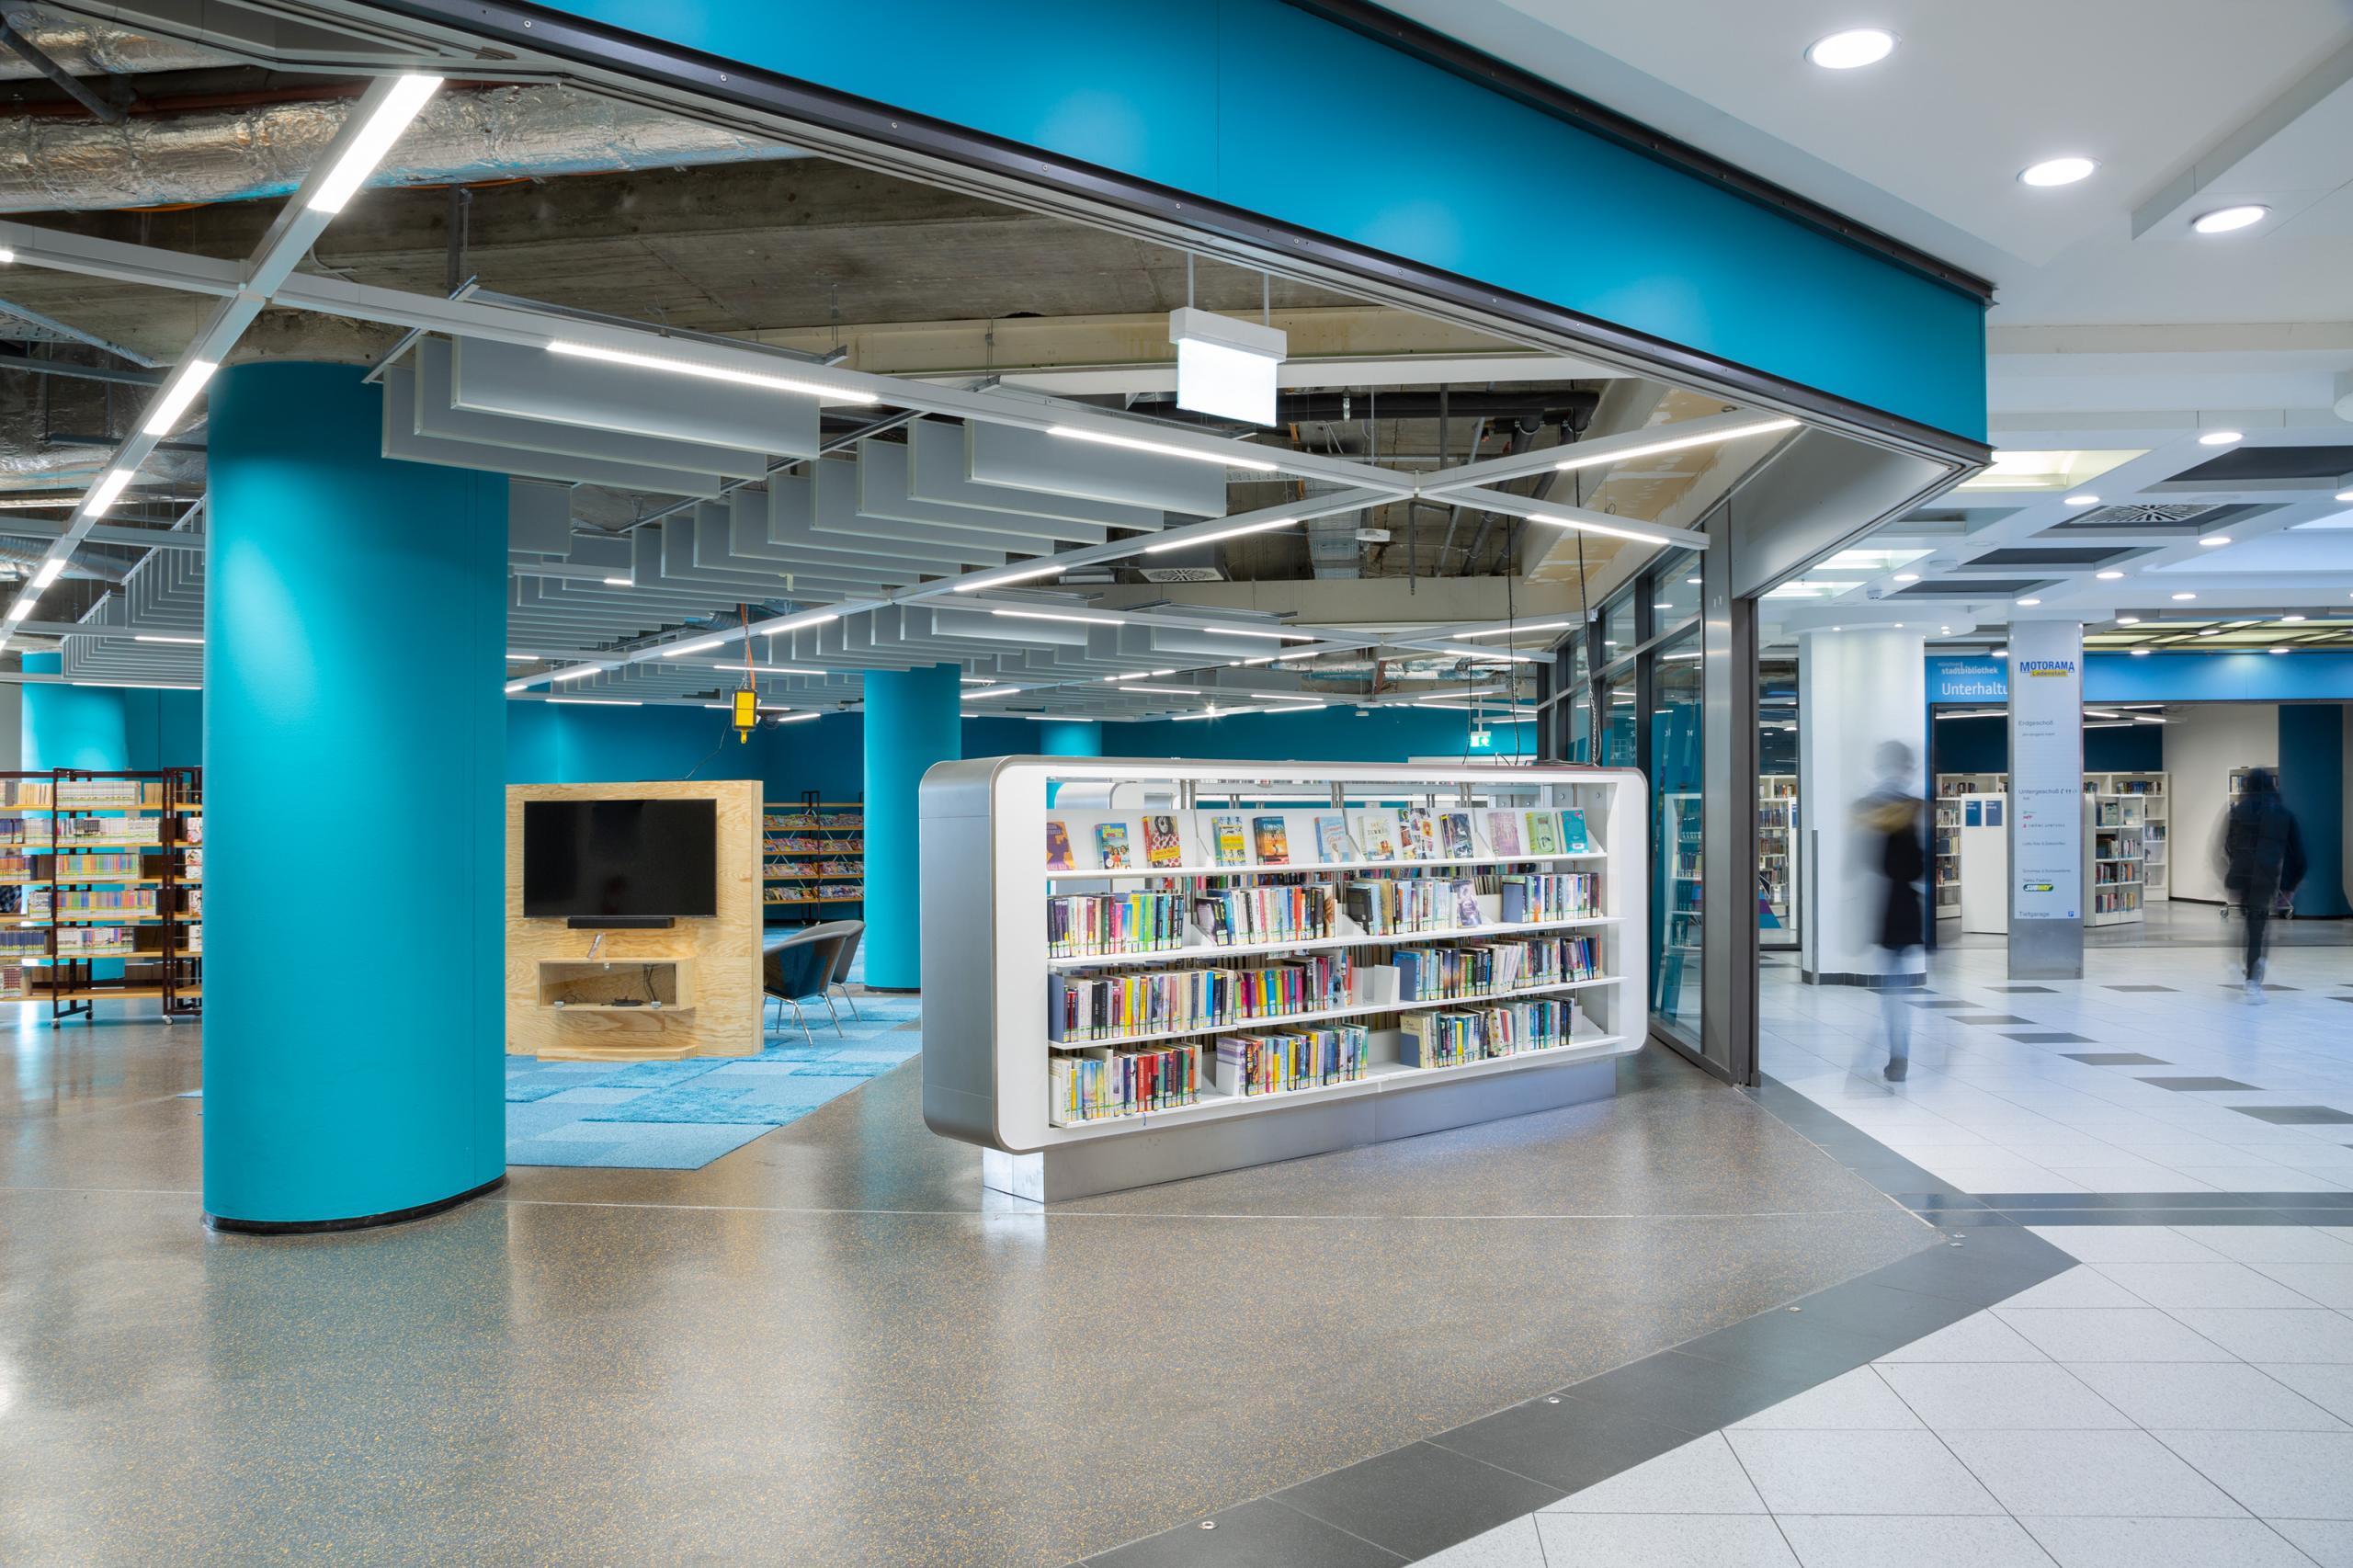 Eine Fläche in der Motorama Ladenstadt. Man sieht links den blauen Bereich der neu gestalteten Münchner Stadtbibliothek.